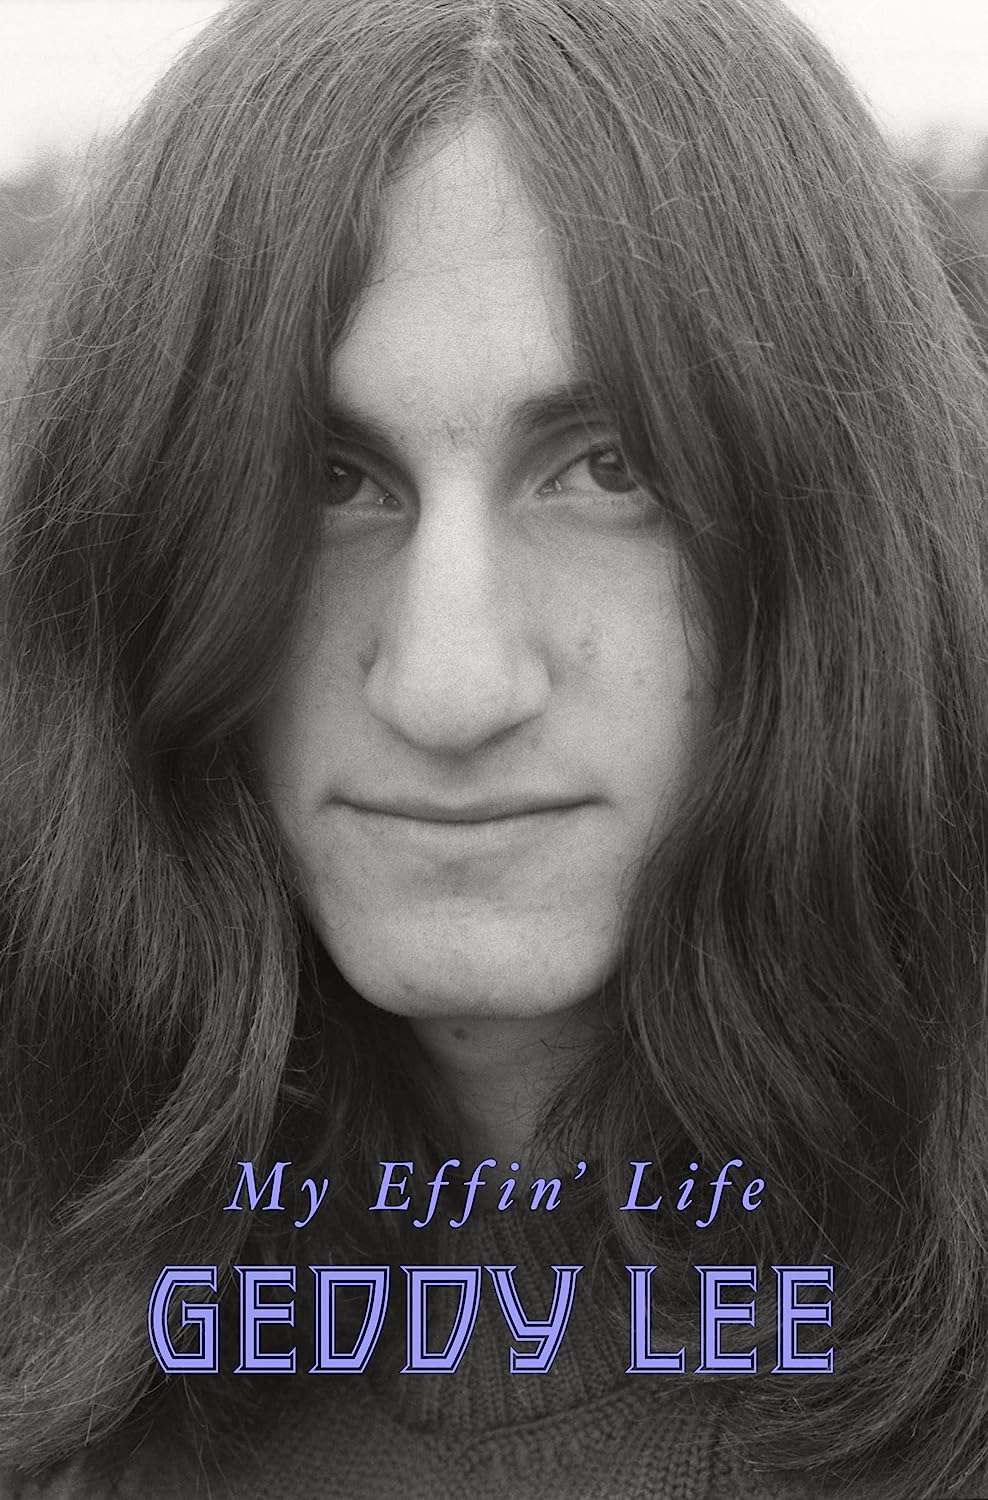 Geddy Lee- My Effin' Life